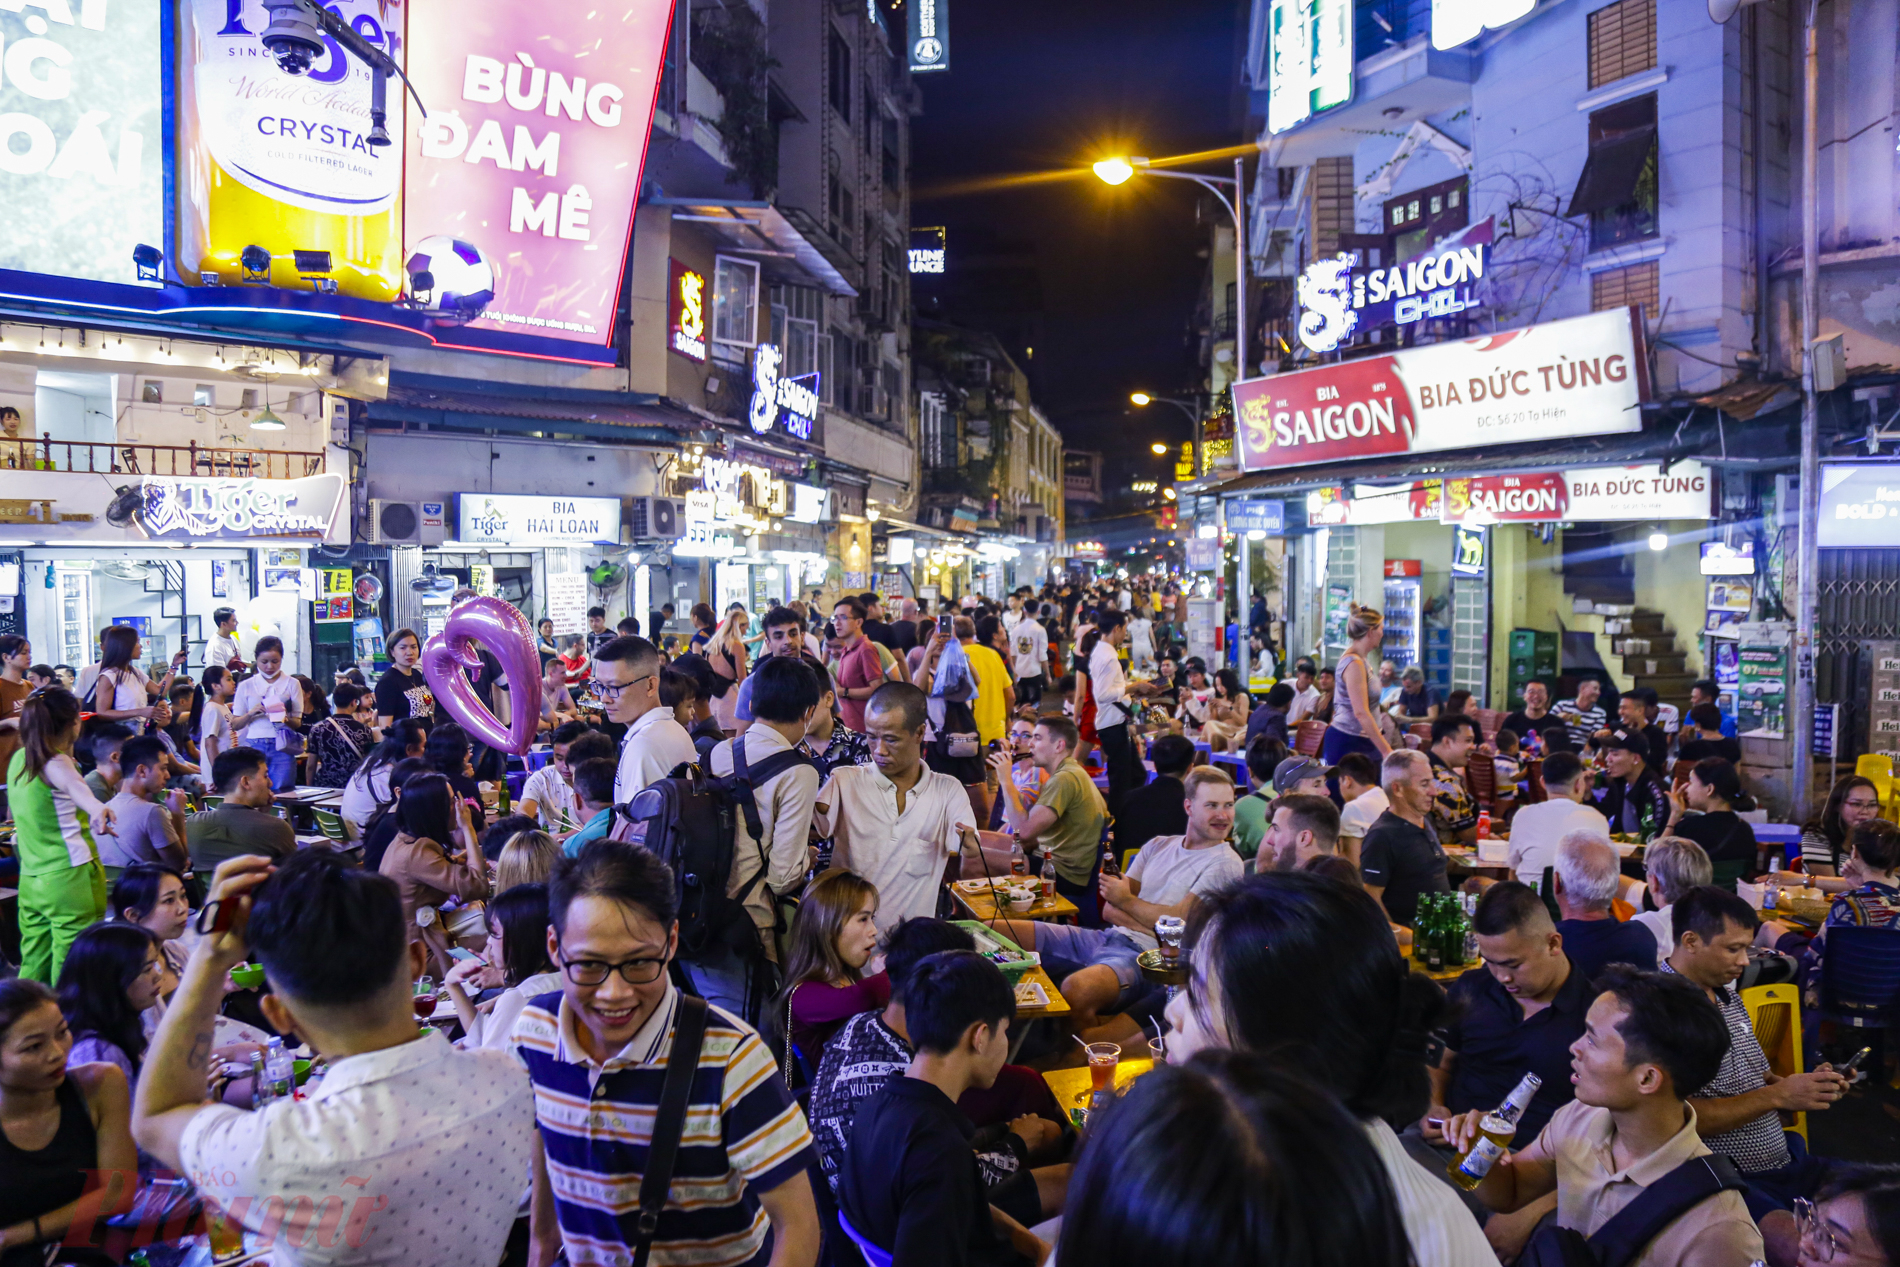 Phố Tạ Hiện (Hoàn Kiếm, Hà Nội) với tuyến phố đi bộ nối dài từ Tạ Hiện - Lương Ngọc Quyến - Hàng Bạc thông sang Hàng Ngang - Hàng Đào. Đây chính là khu phố đêm náo nhiệt nhất ở Hà Nội.